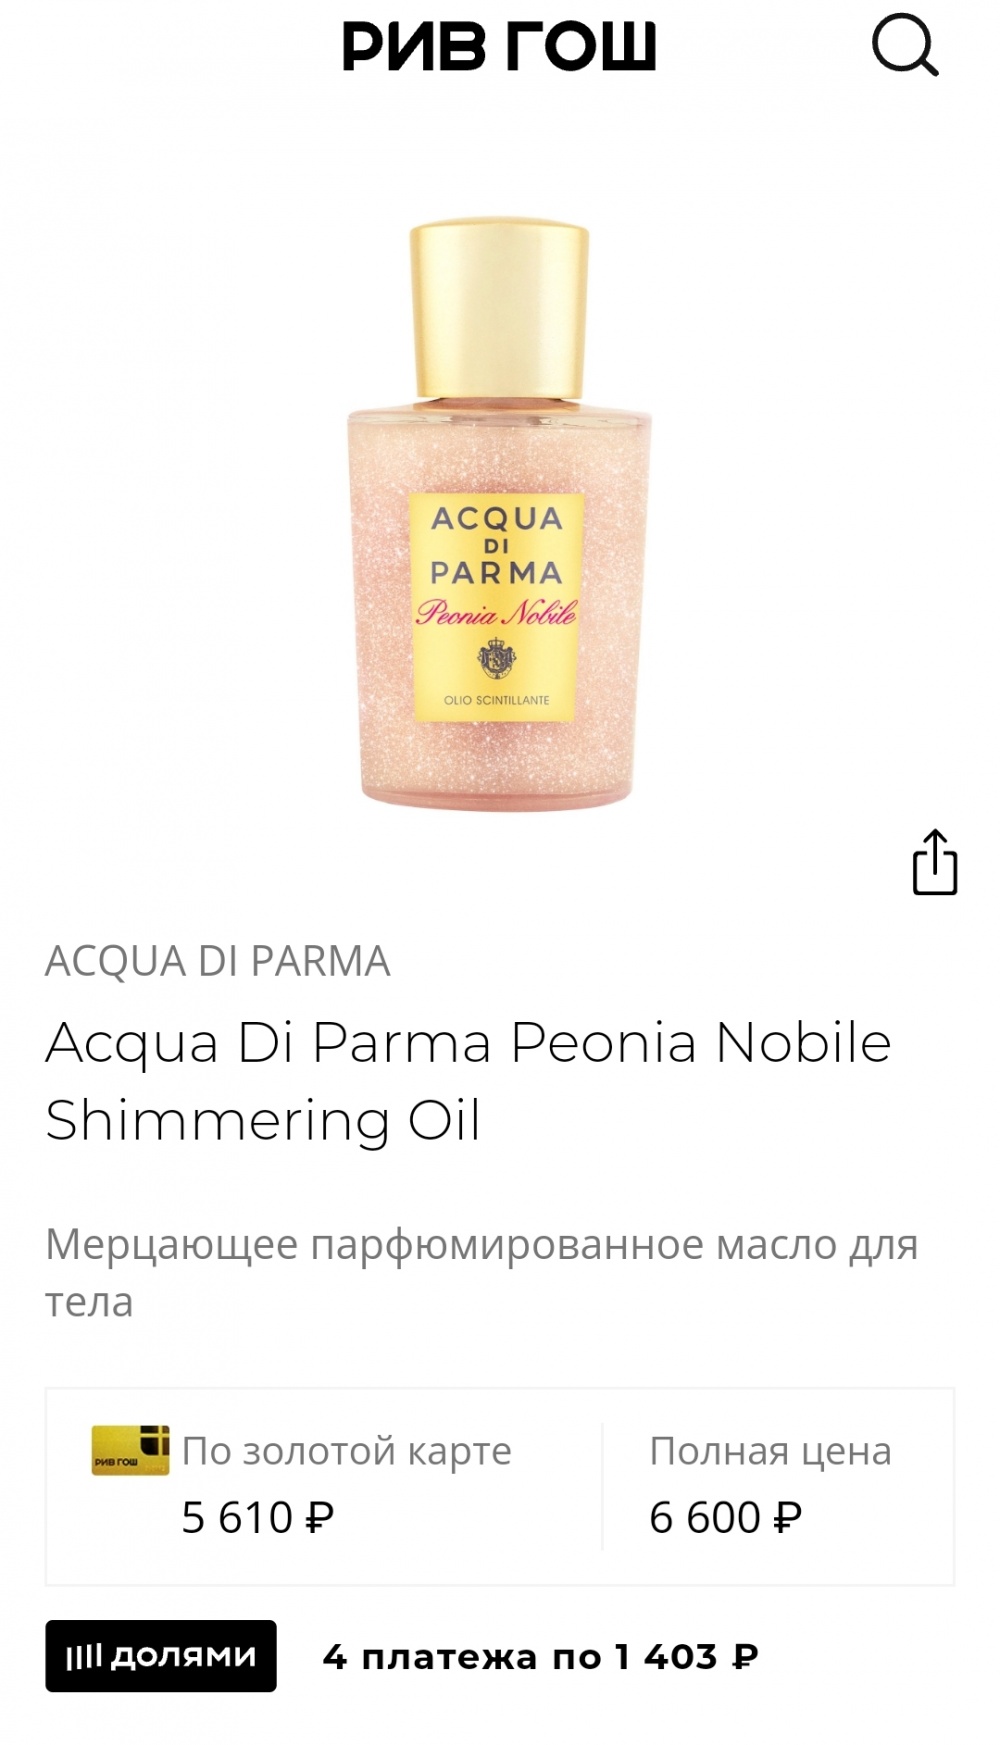 ACQUA DI PARMA peonia nobile, Olio scintillante, 100 ml